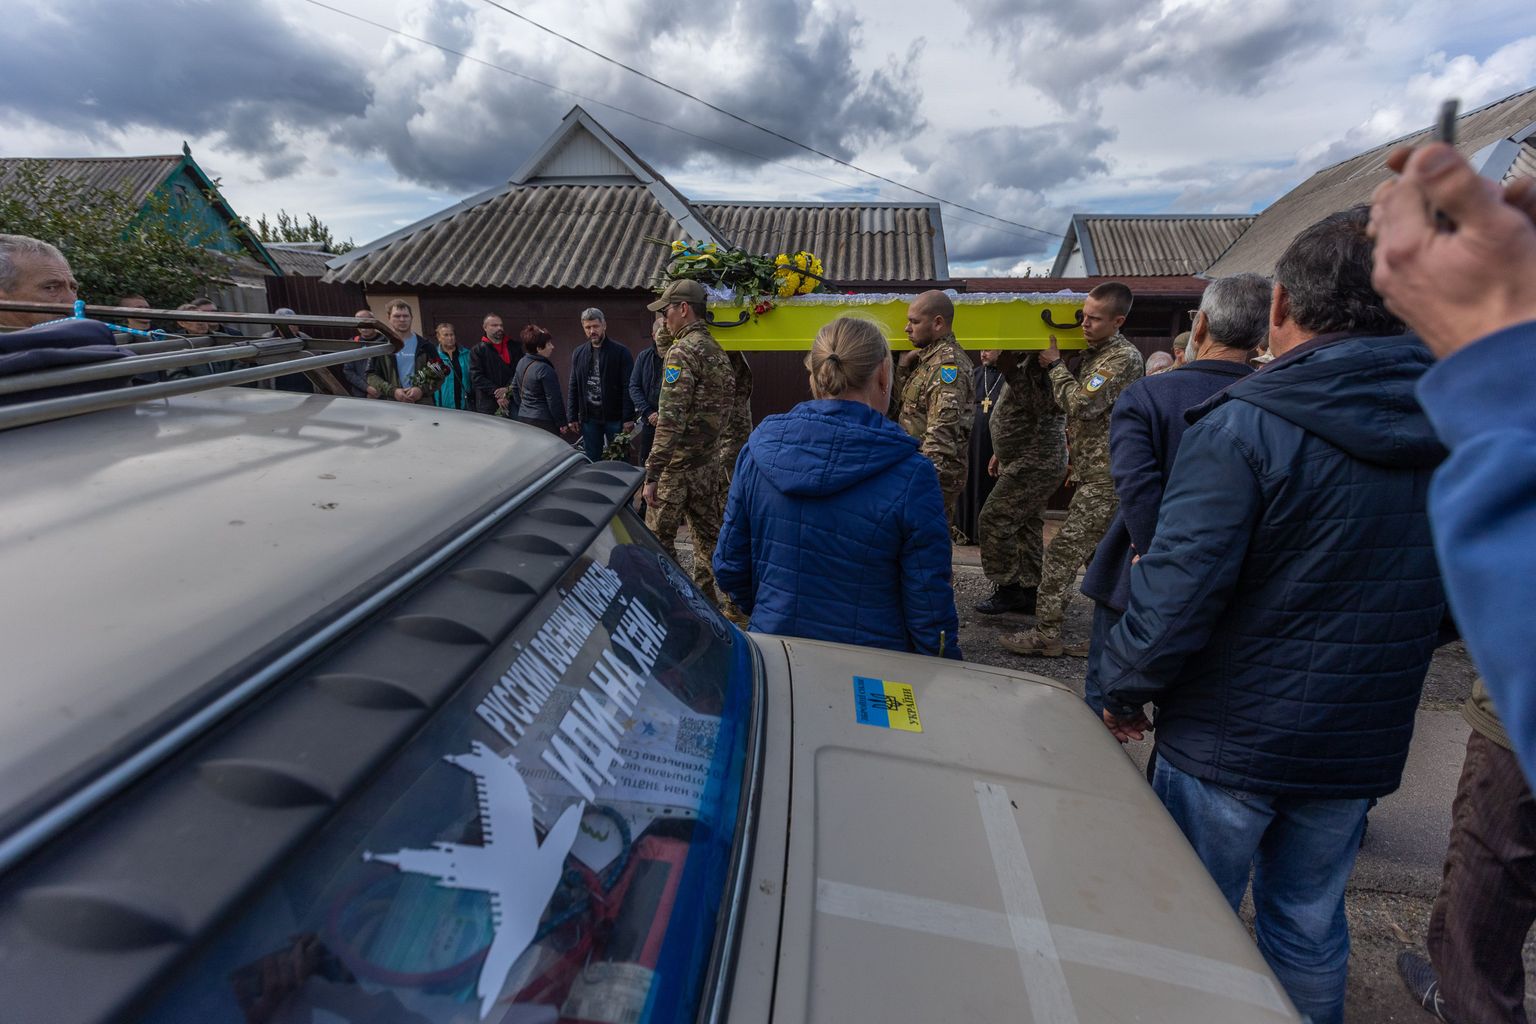 Ukraina sõdurid viivad hukkunud kaaslast Vladimir Linskiit tema kodumajast viimasele teekonnale. Maja ees seisval sõiduautol paistab kiri, mis saadab Vene sõjalaeva kõigile tuntud kohta.